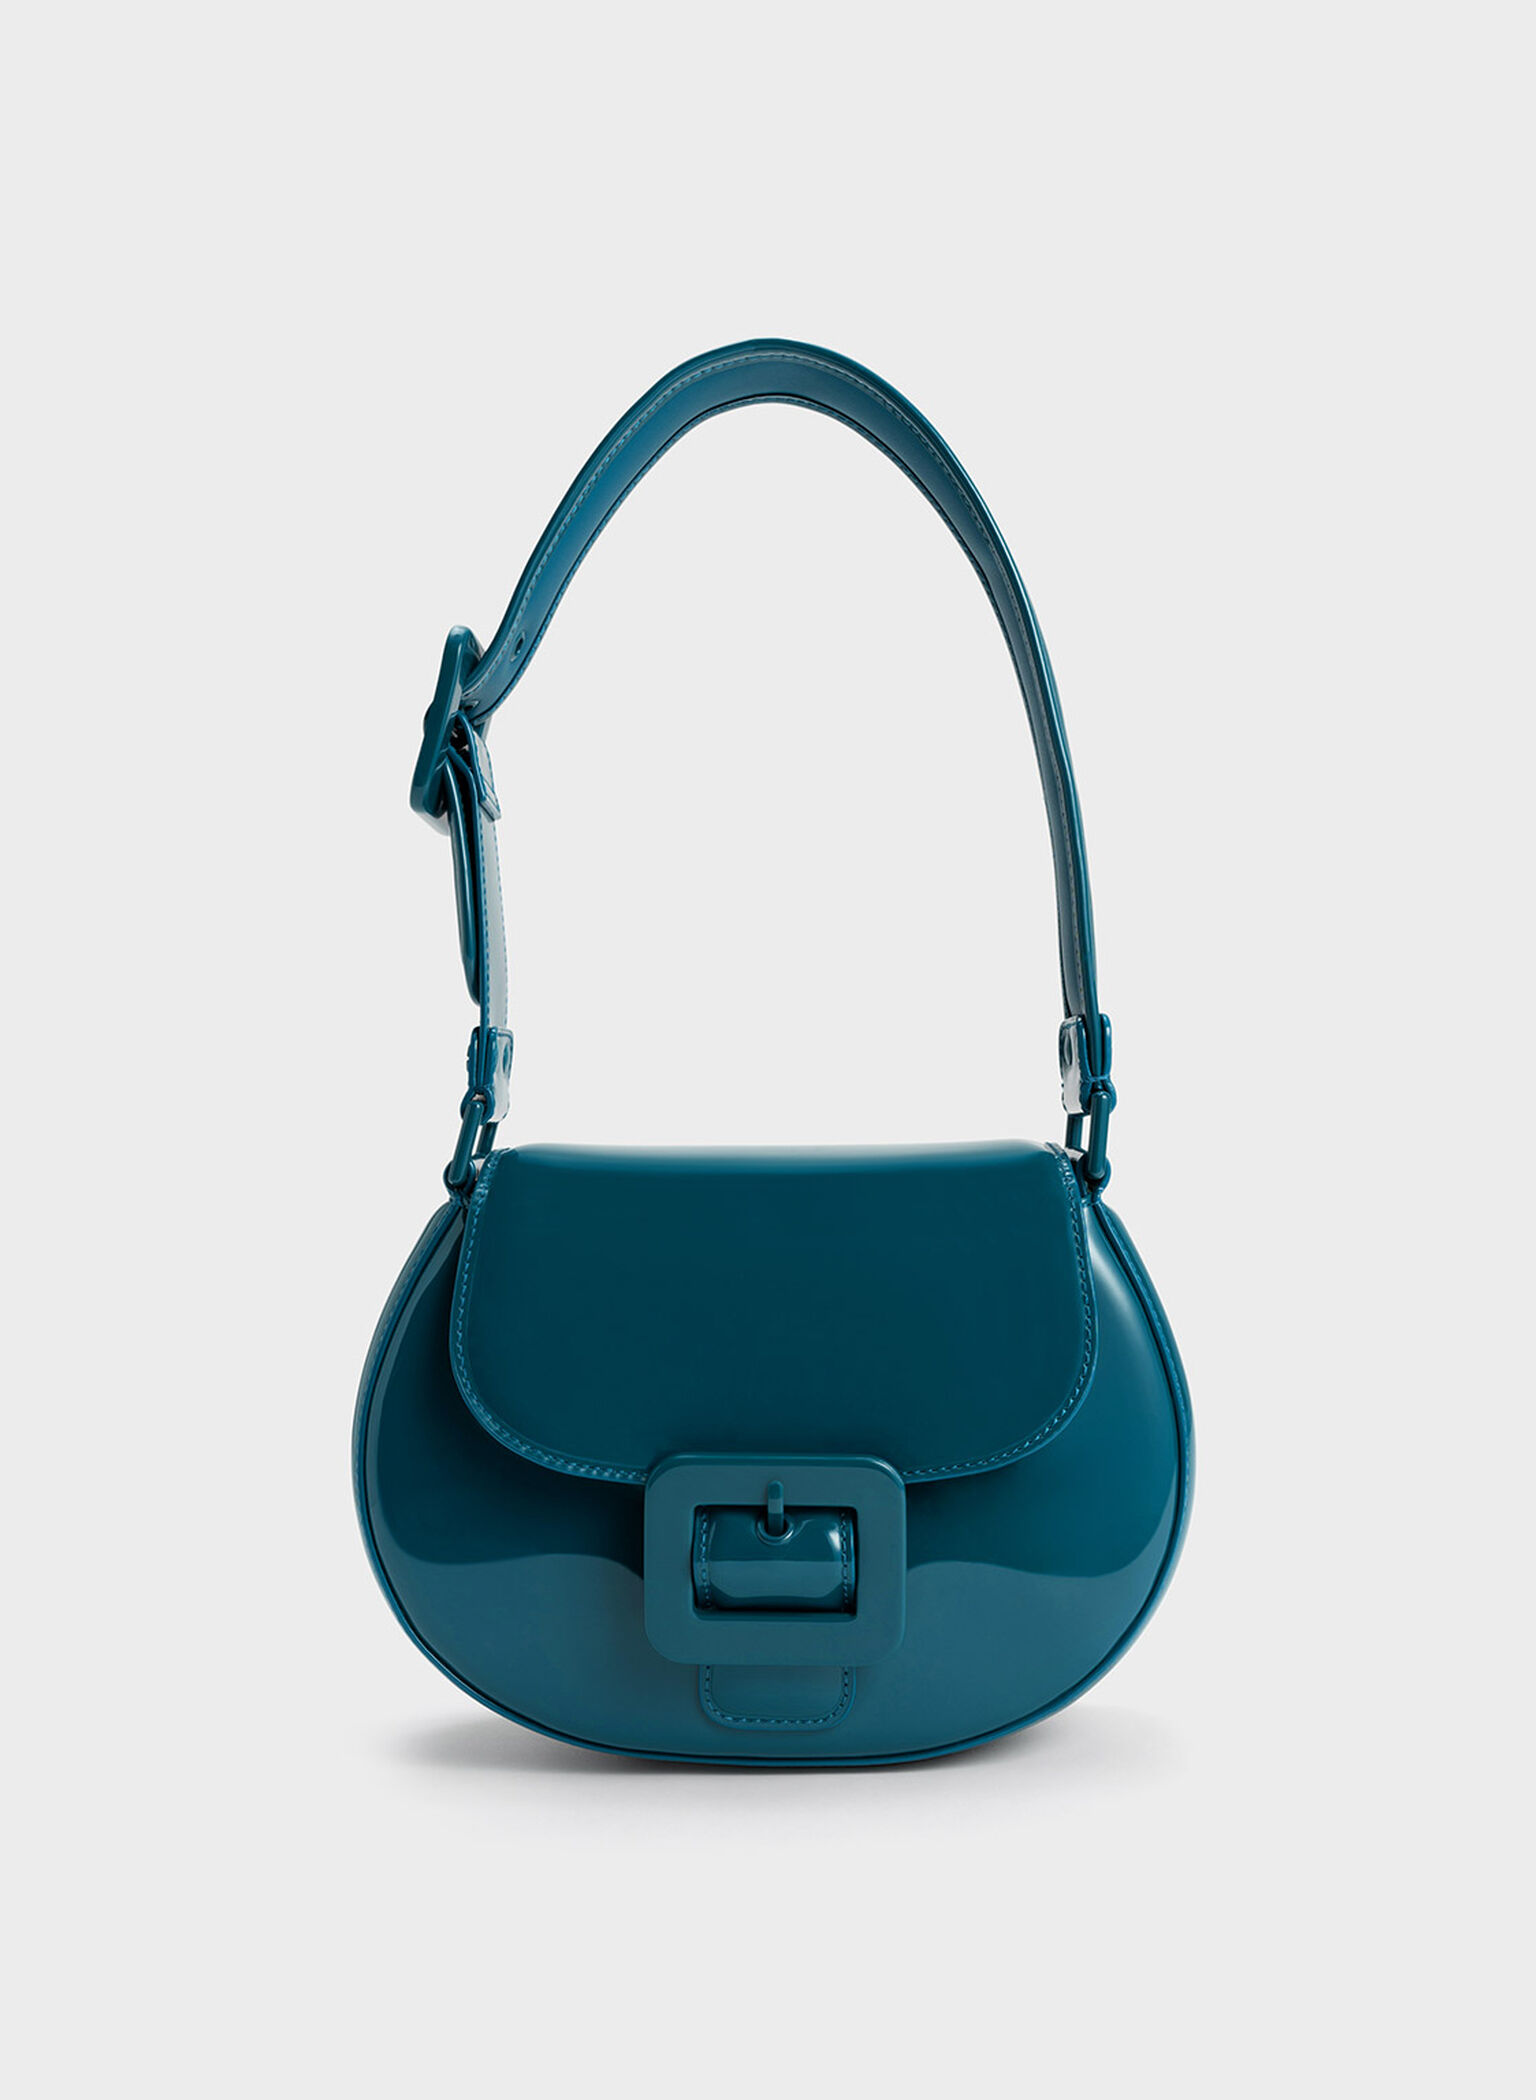 Handbag Shoulder Strap Adjustable - 25 mm x 130 cm